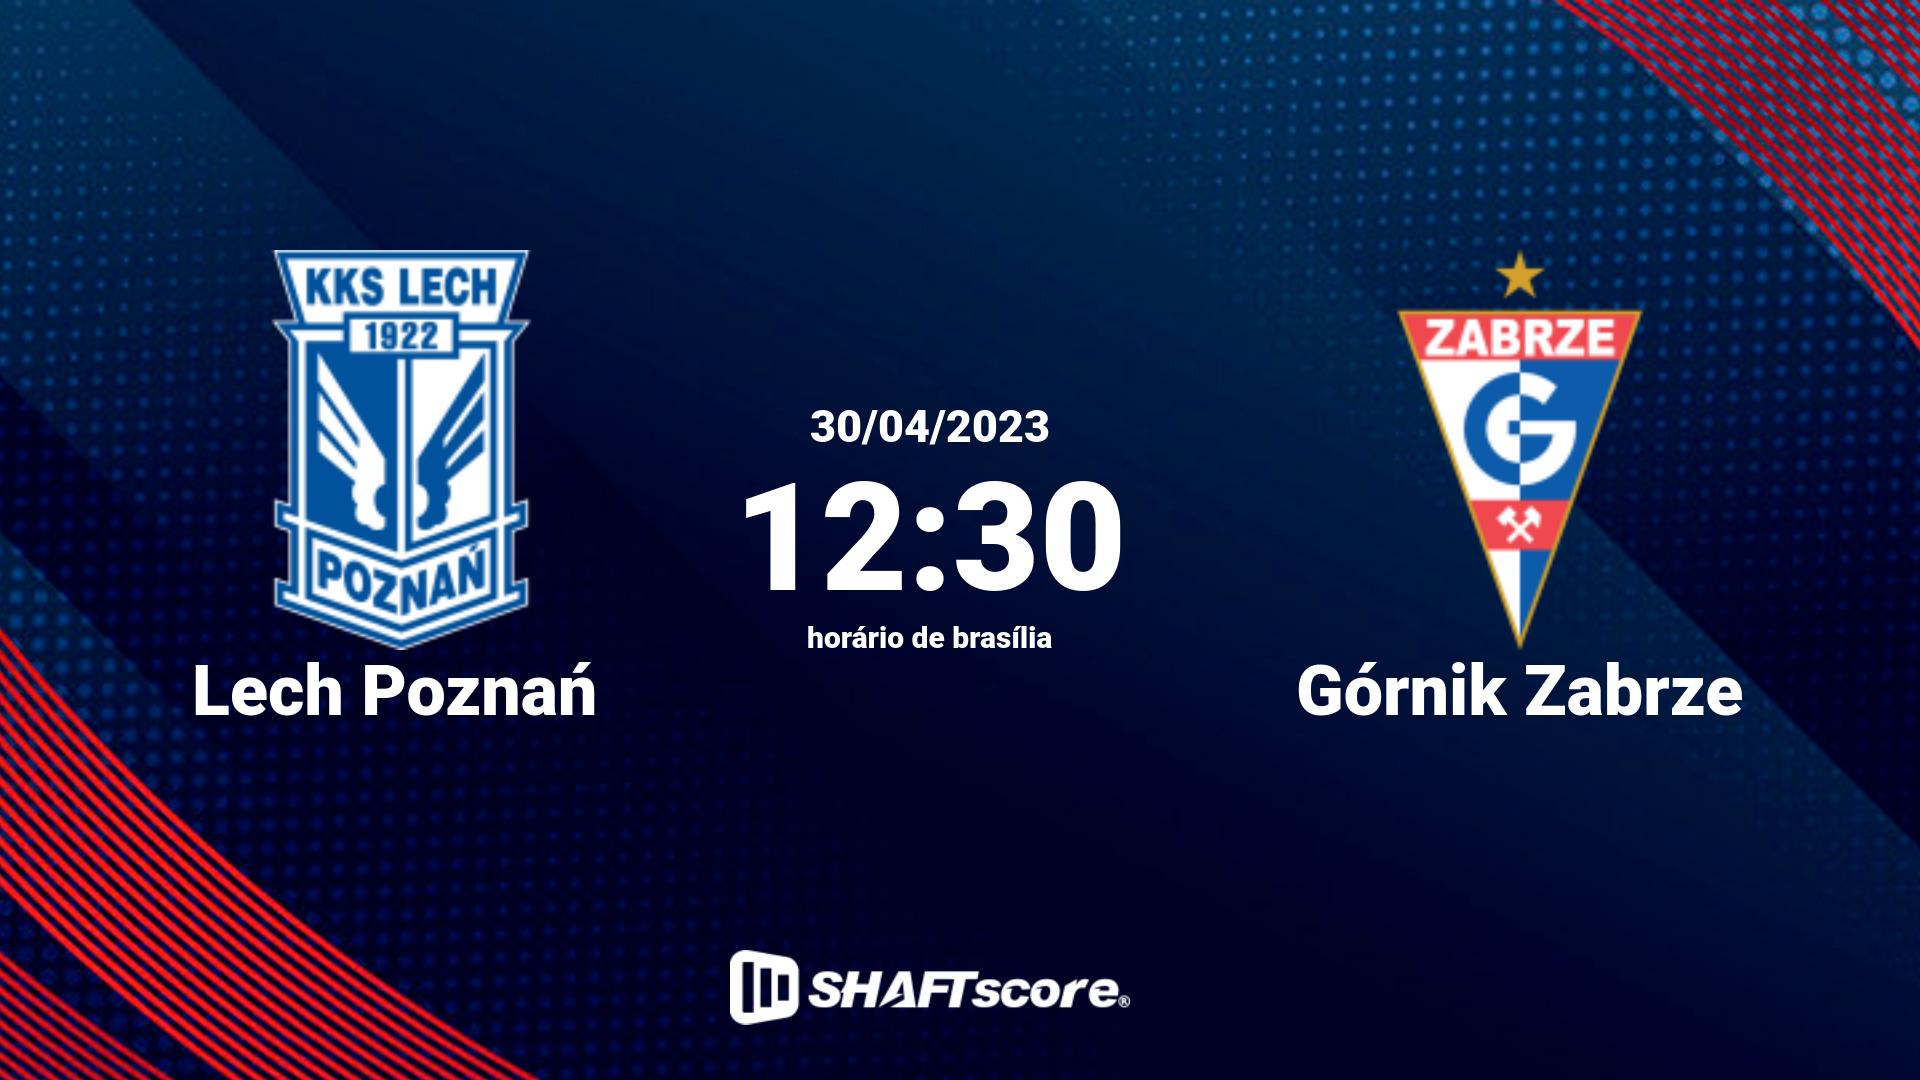 Estatísticas do jogo Lech Poznań vs Górnik Zabrze 30.04 12:30